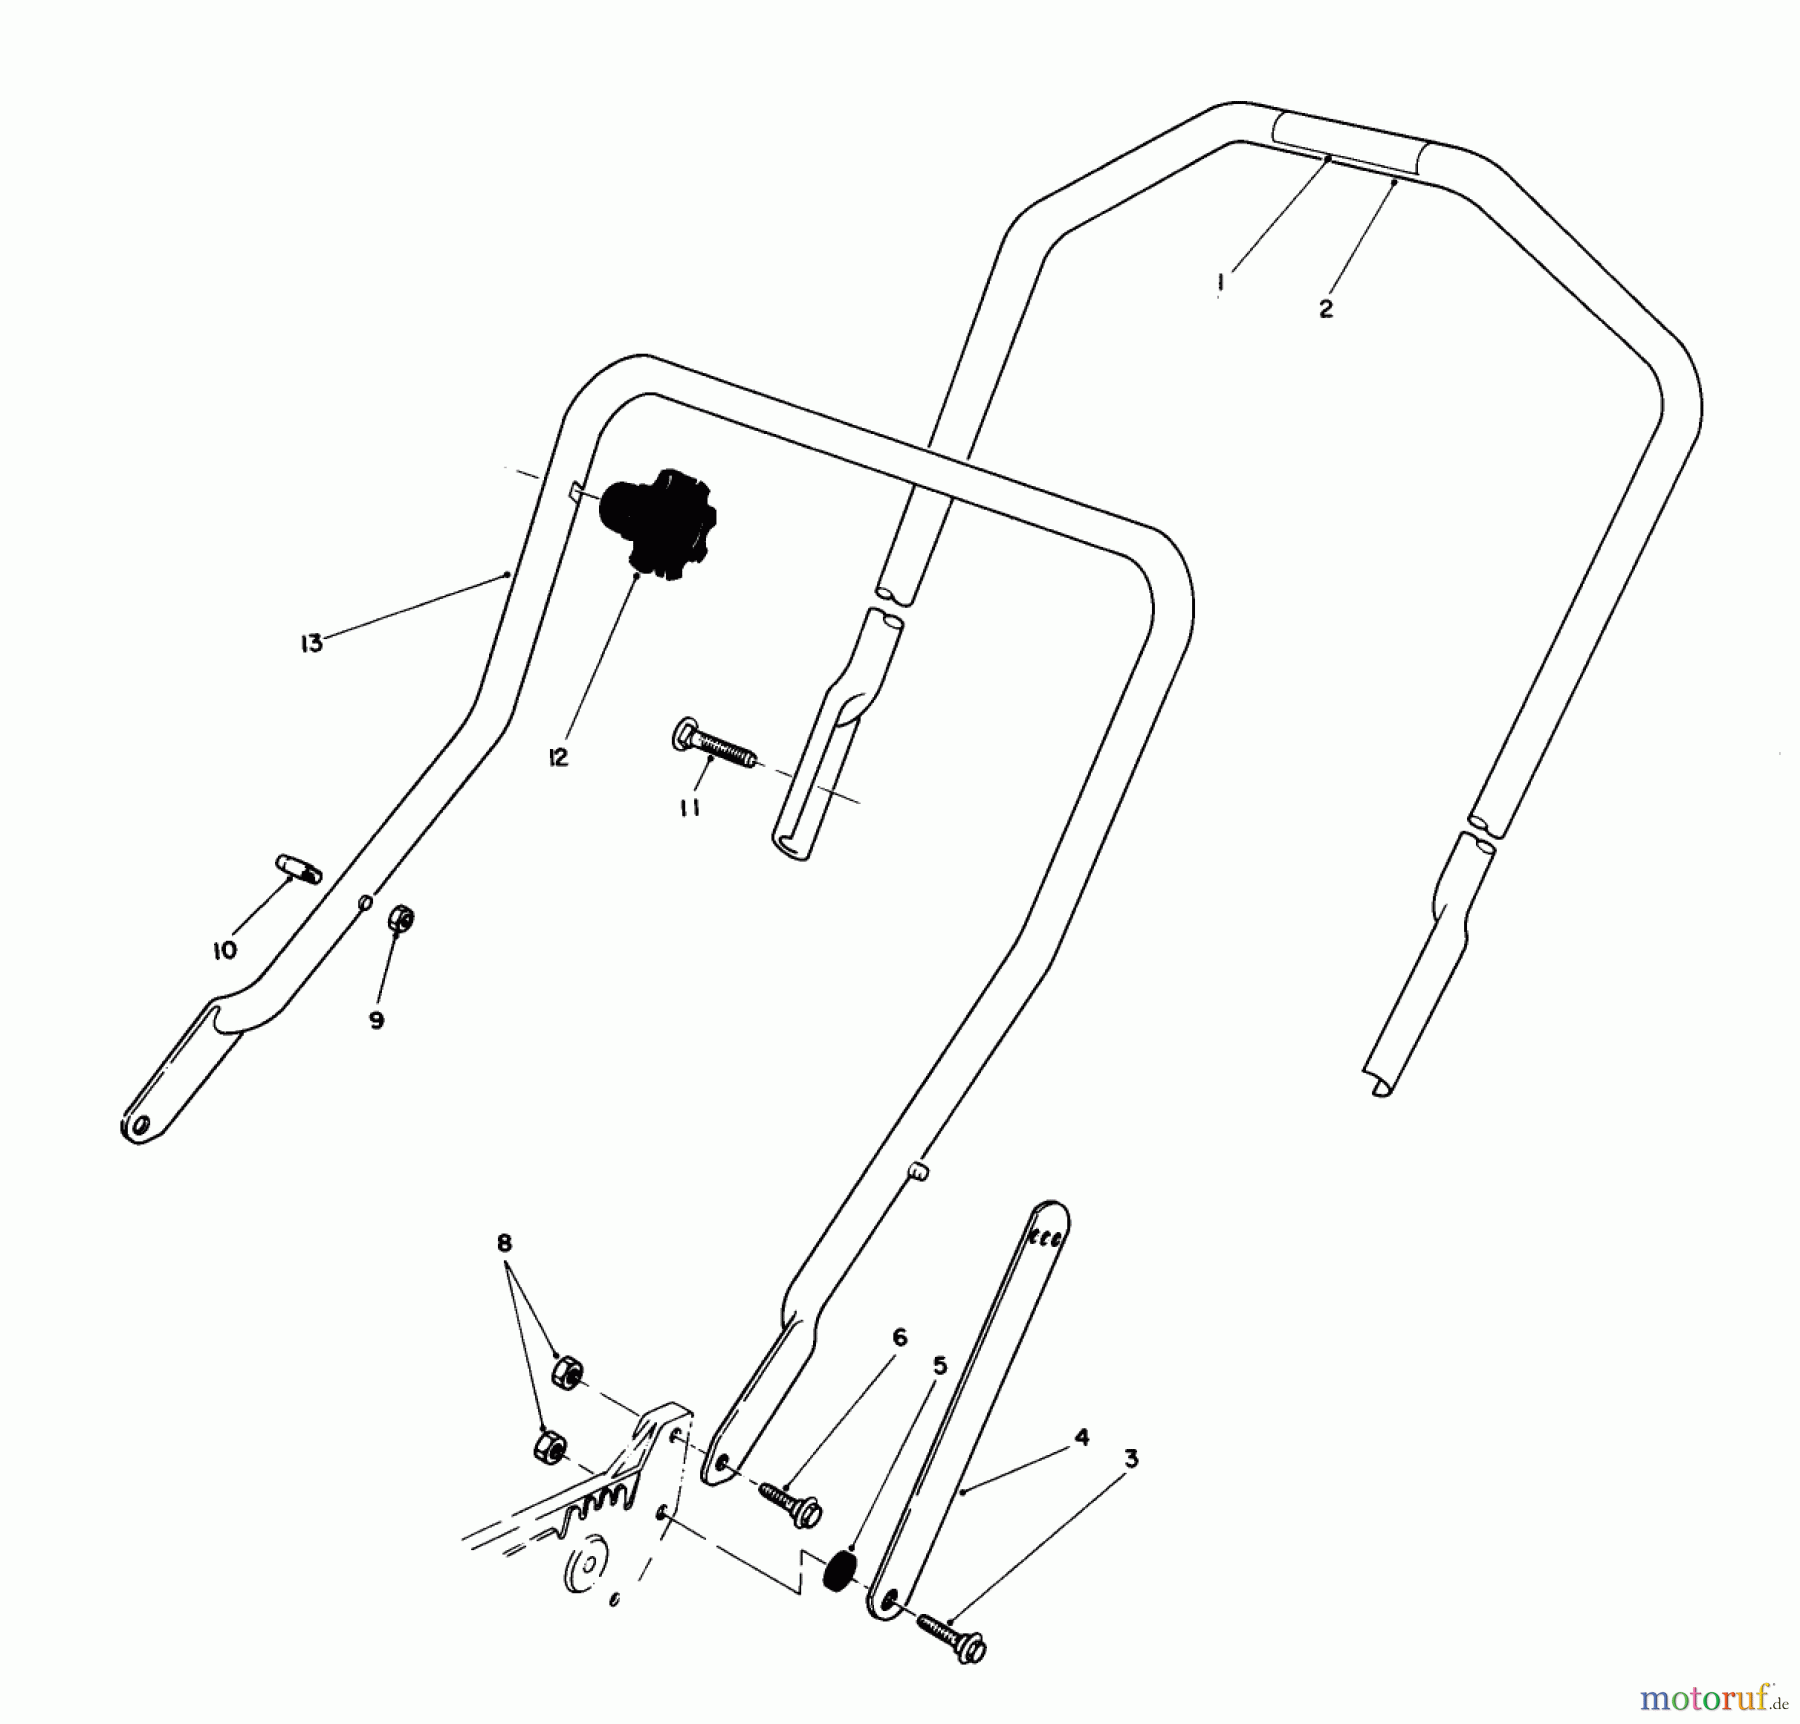  Toro Neu Mowers, Walk-Behind Seite 1 20581 - Toro Lawnmower, 1988 (8000001-8999999) HANDLE ASSEMBLY